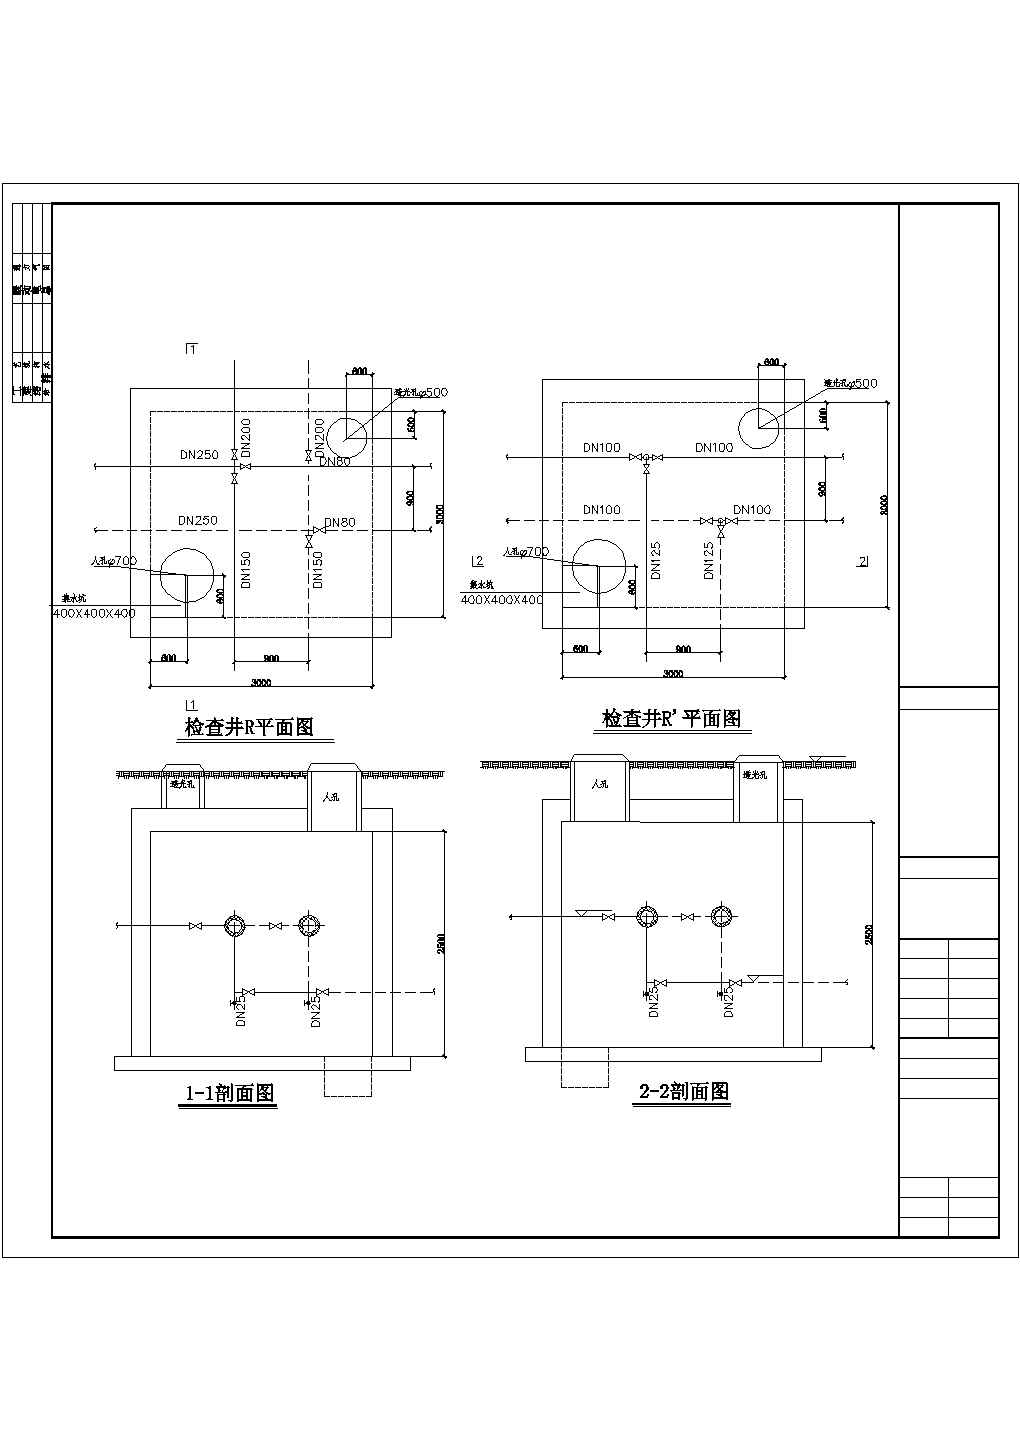 南京某高档住宅小区全套室外热网施工设计cad图(含干管检查井平面图)